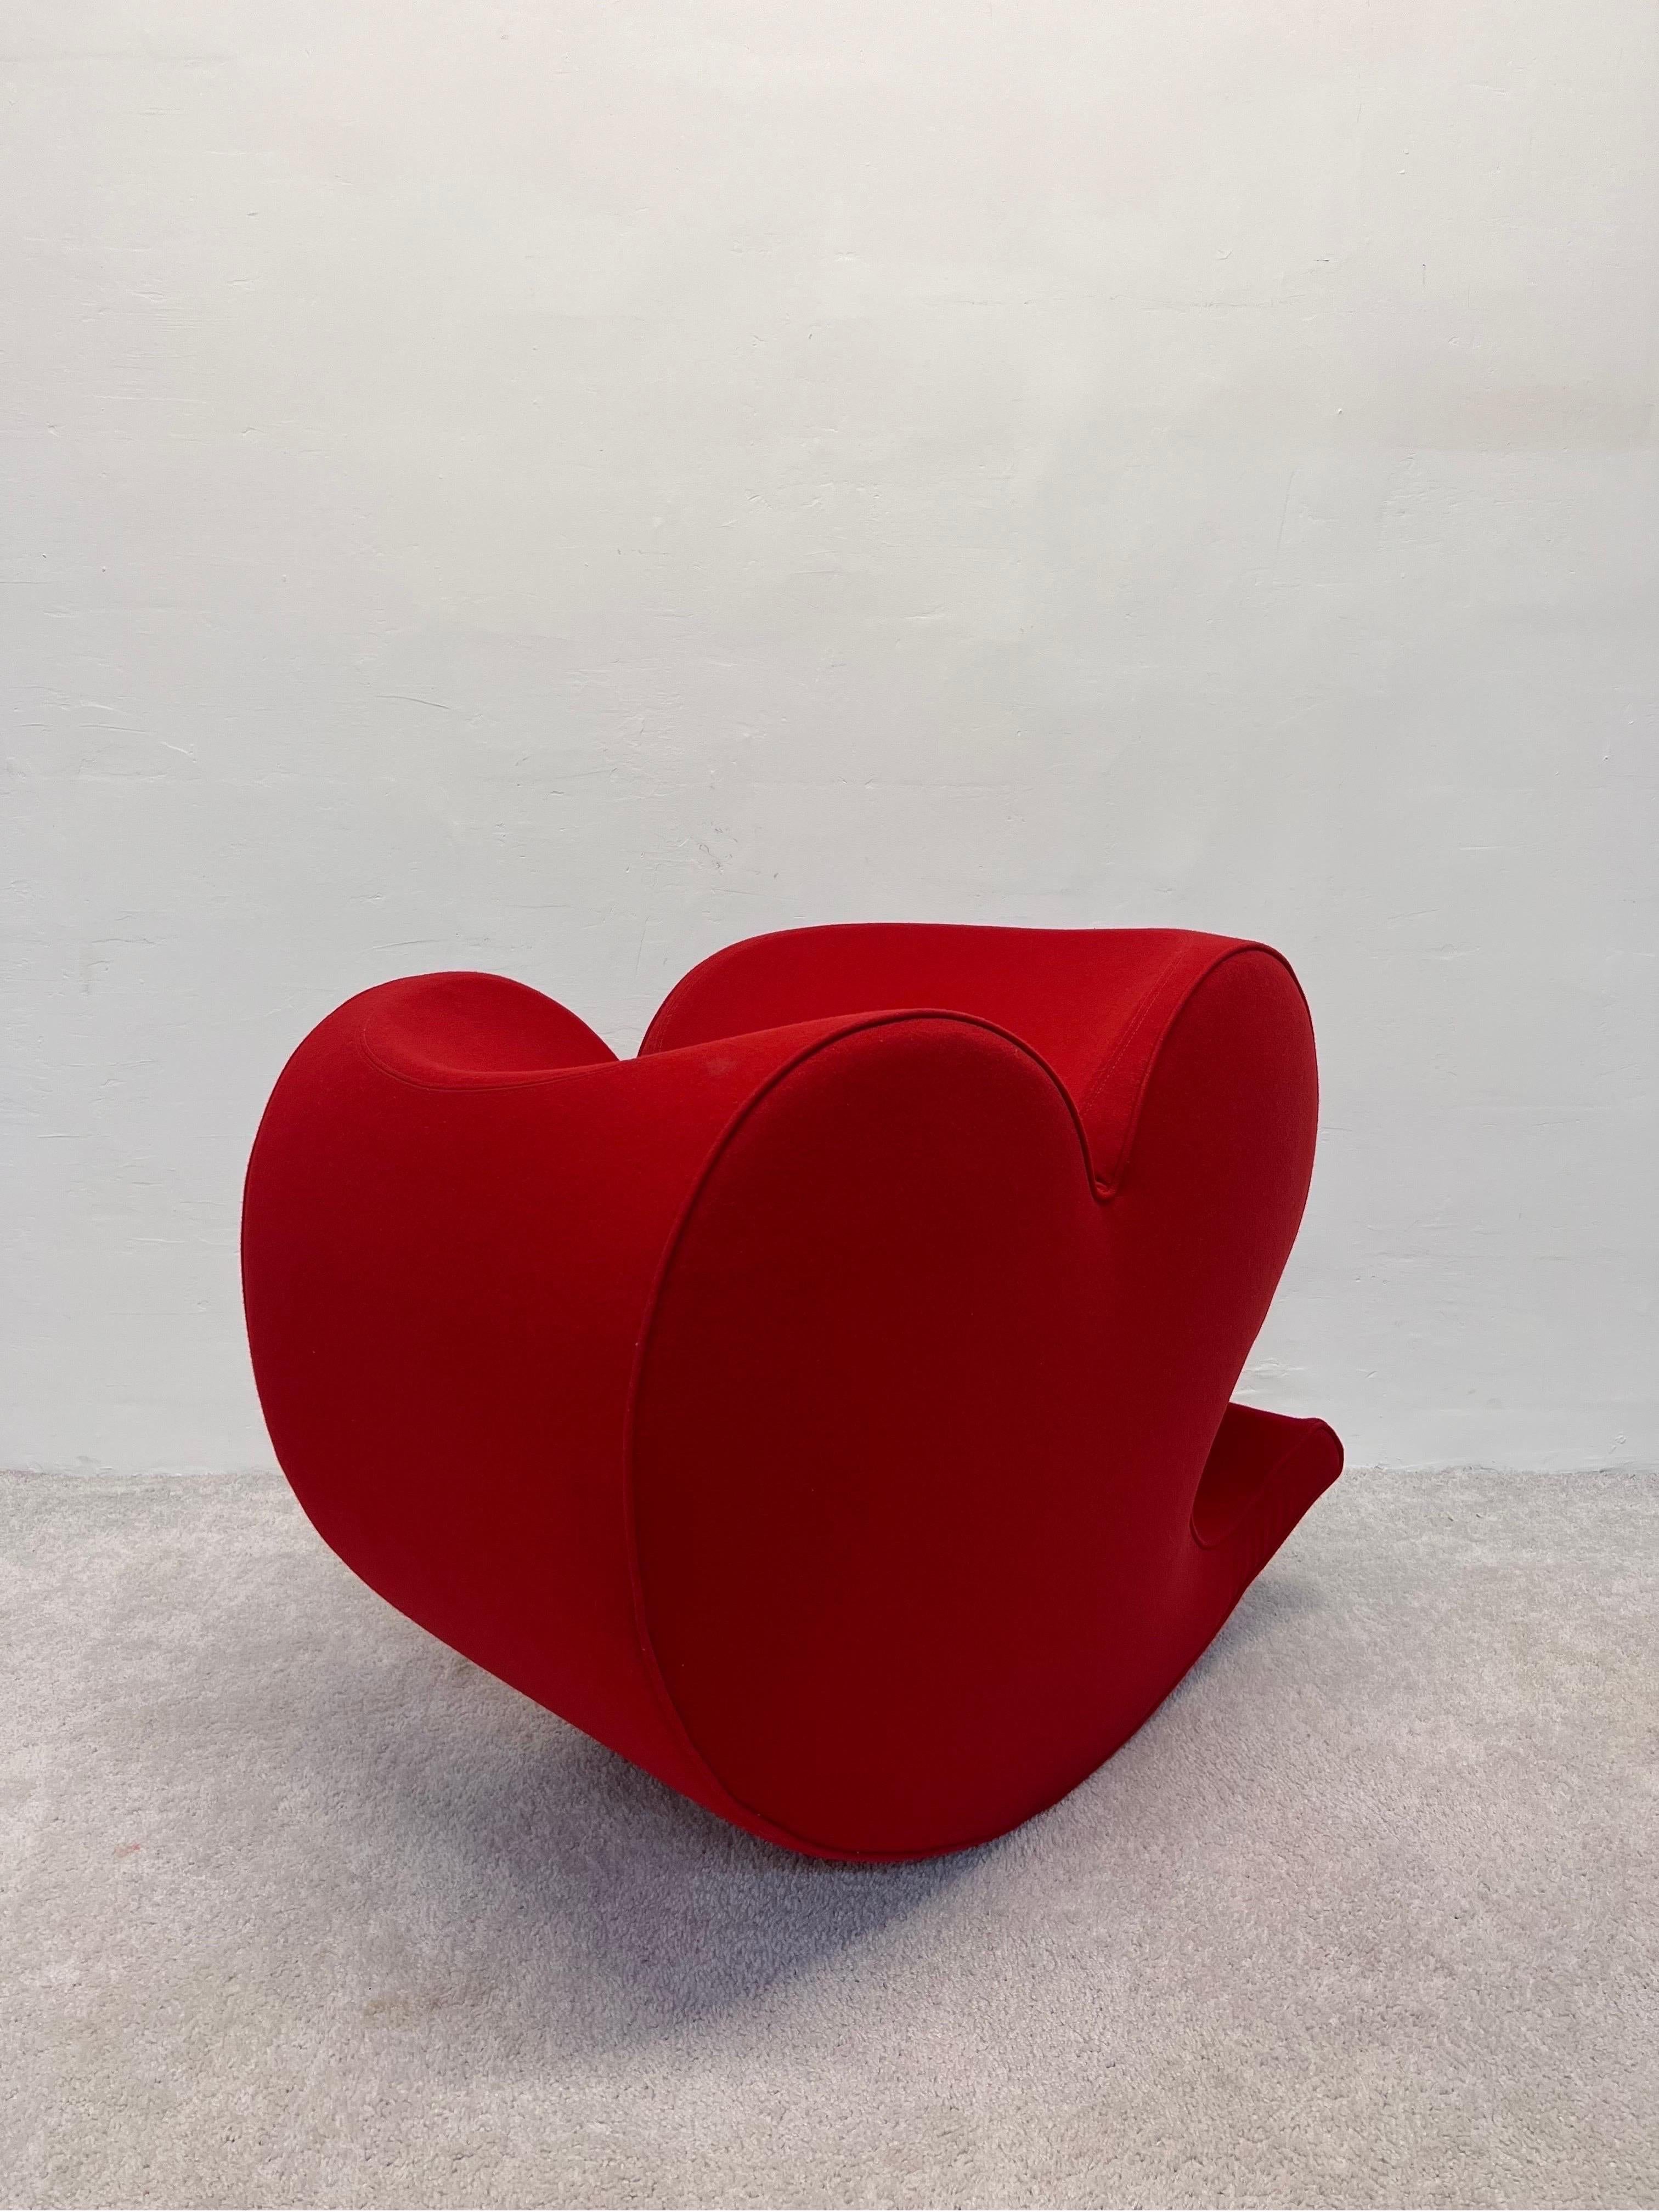 Spring Collection Soft Heart Stuhl, entworfen von Ron Arad 1988 für Moroso. Dieses Beispiel stammt aus den frühen 1990er Jahren. Die Basis des Stuhls ist mit einer schweren Stahlplatte beschwert, um ein Gegengewicht zu schaffen. Der originale rote